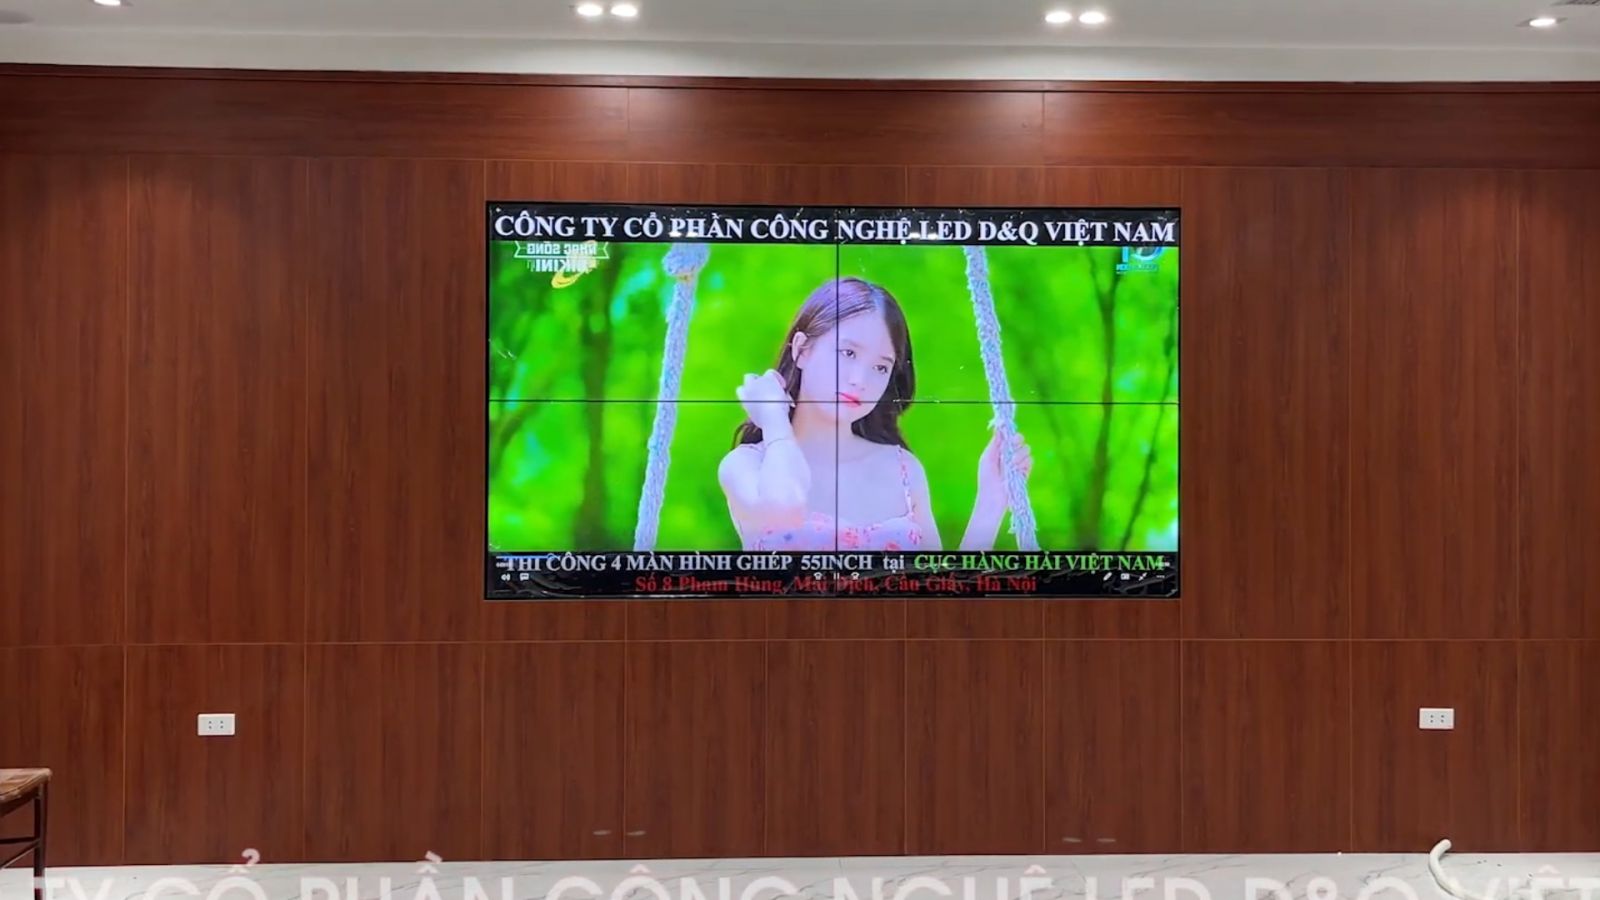 CỤC HÀNG HẢI VIỆT NAM - Số 8 Phạm Hùng | DQ Lắp ráp 4 màn hình ghép 55 inch trong phòng họp.